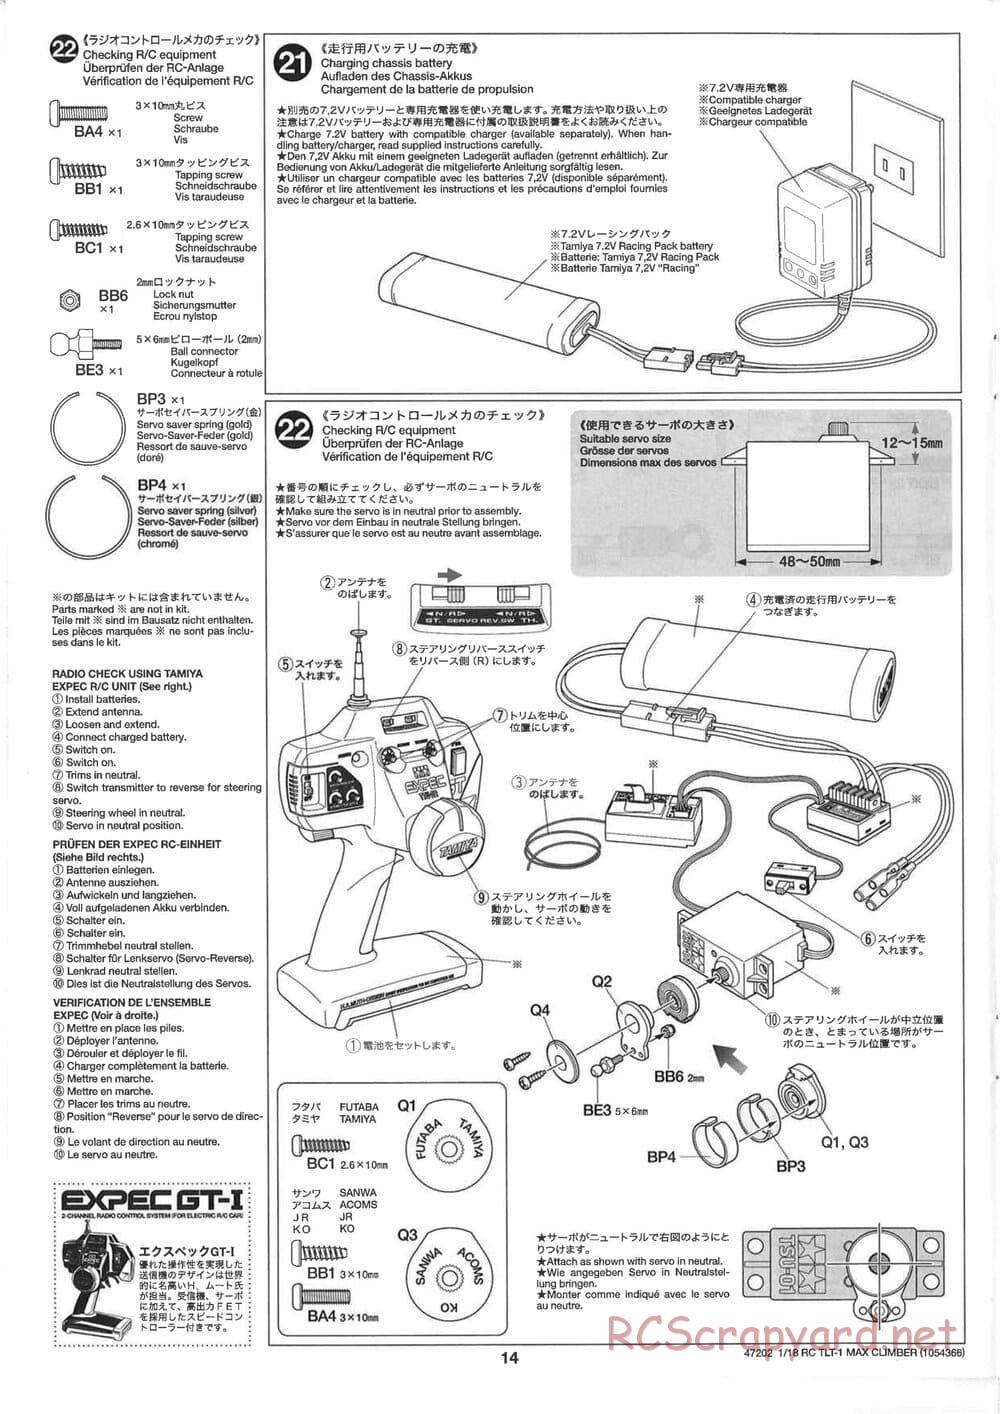 Tamiya - Max Climber - TLT-1 Chassis - Manual - Page 14